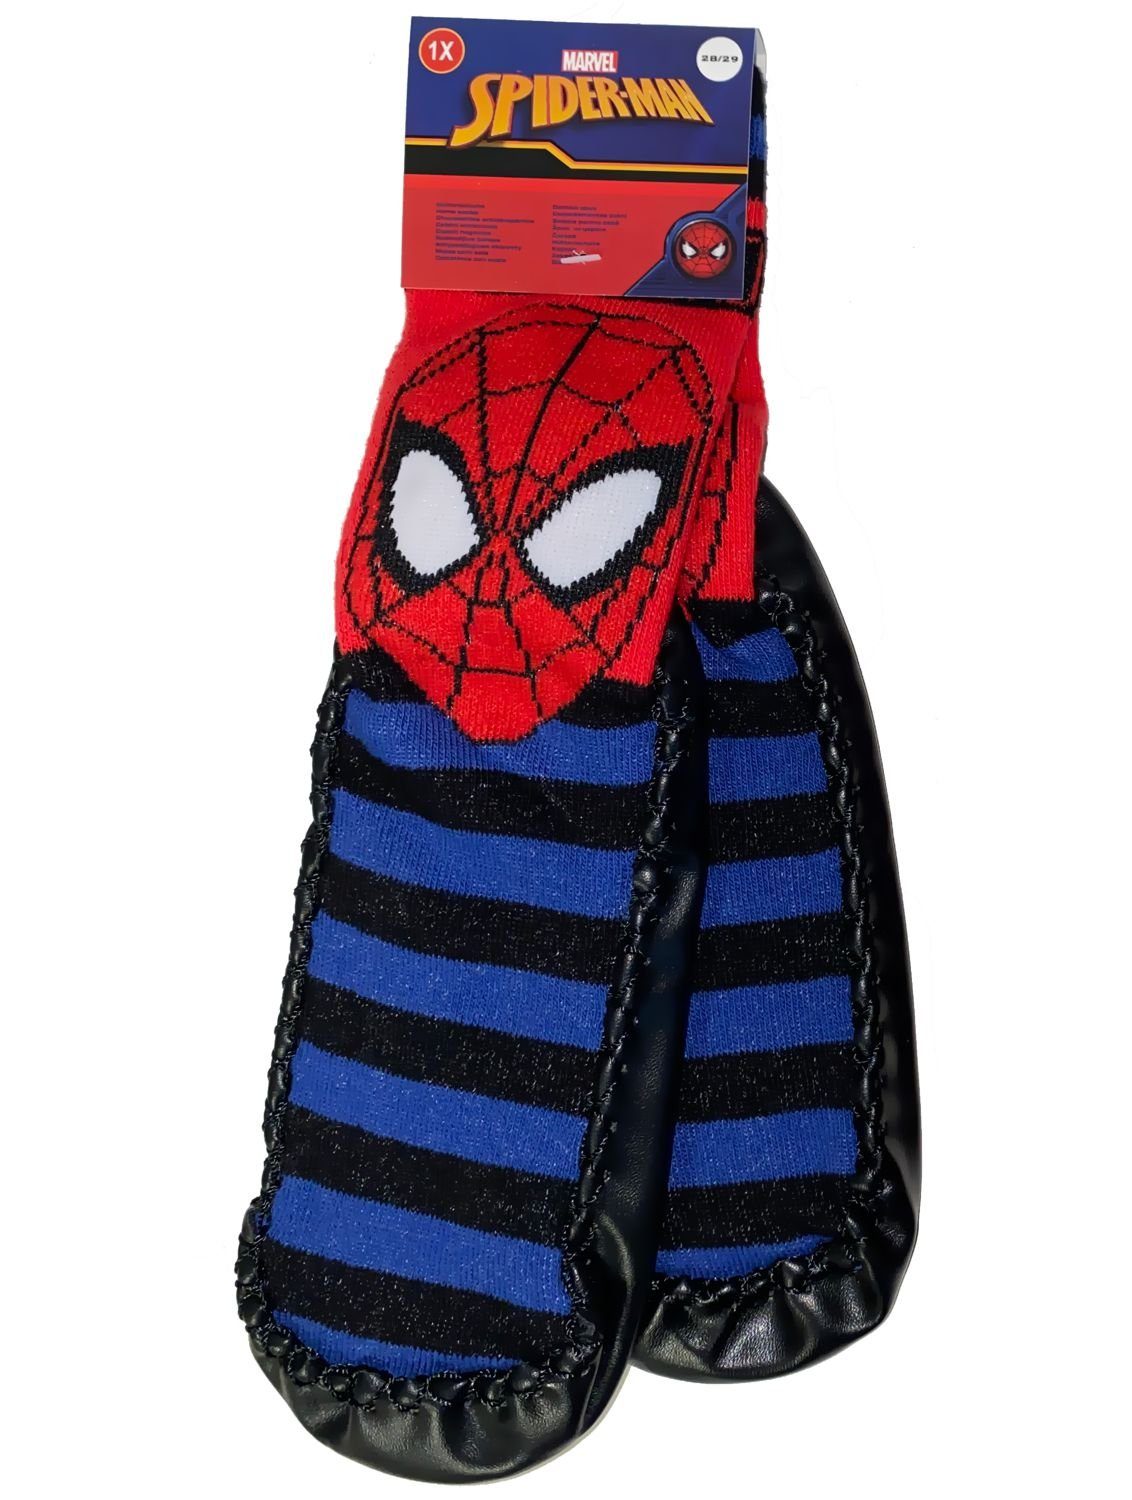 Spiderman Haussocken SPIDERMAN Kindersocken mit Sohle Hausschuhe Socken  Jungen + Mädchen Kita, schule, Zuhause, Kindergarten Gr.26/27 28/29 30/31